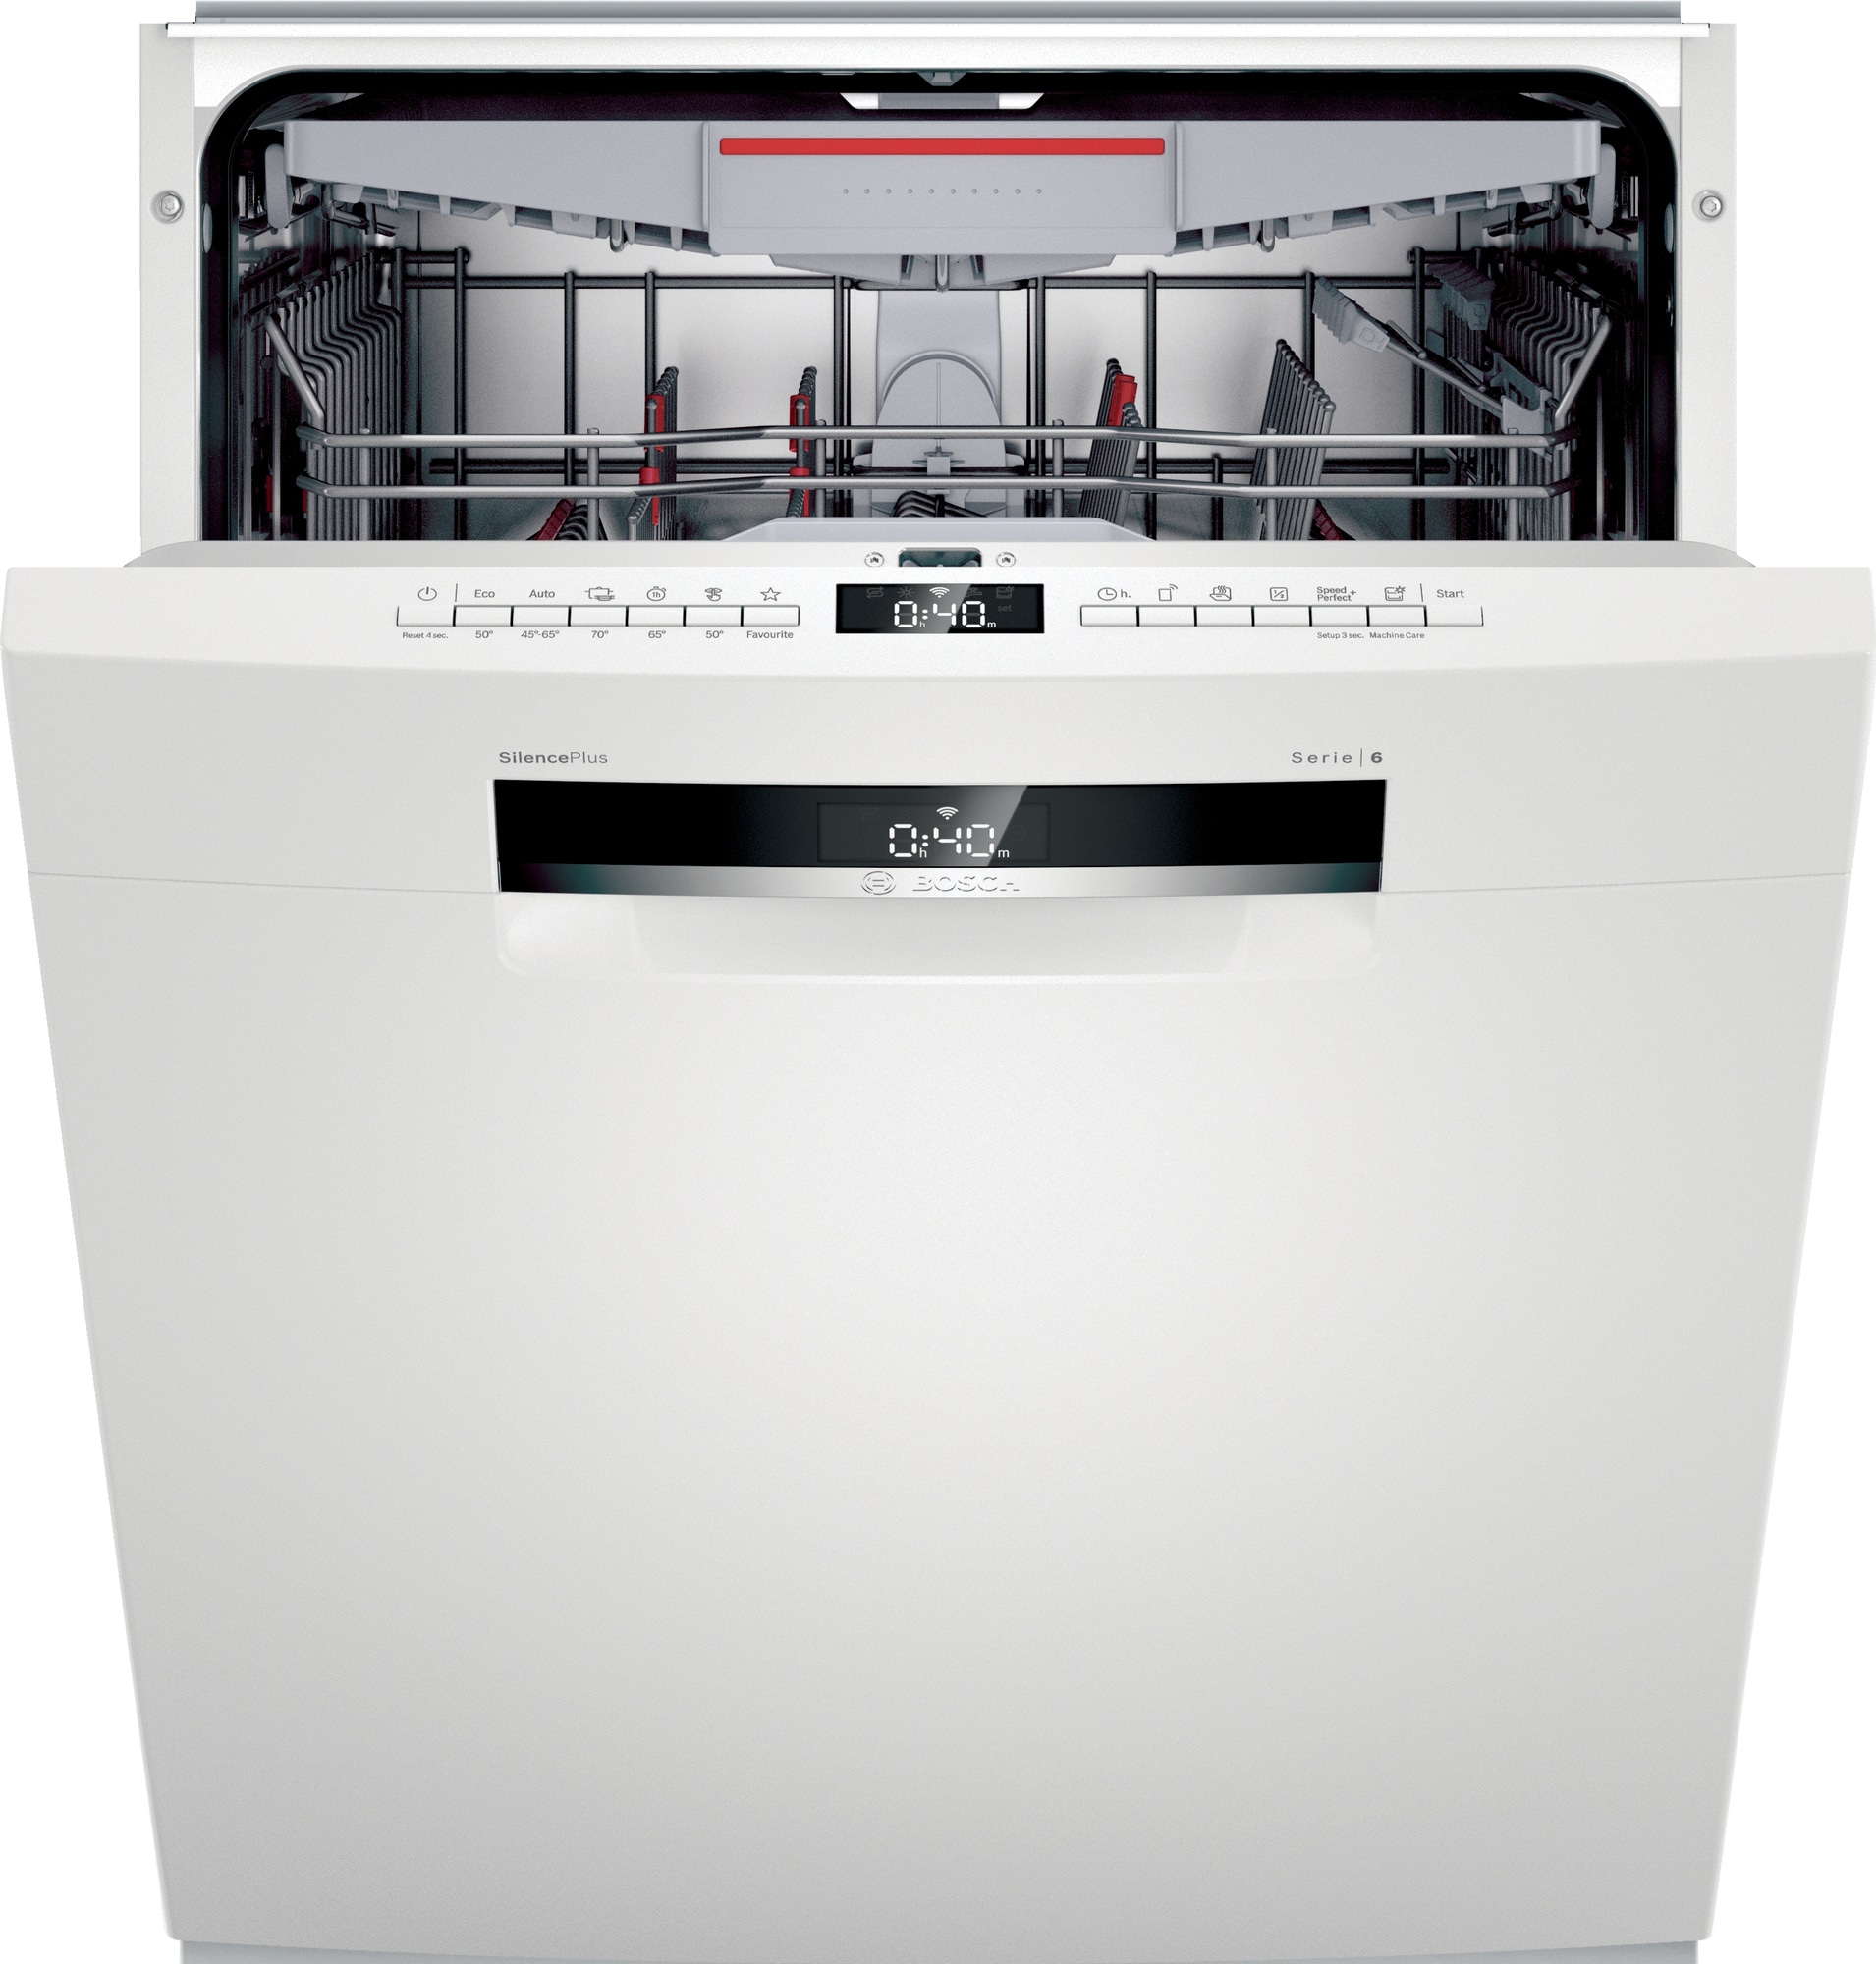 Bosch Serie 6 opvaskemaskine SMU6ECW74S (hvid)